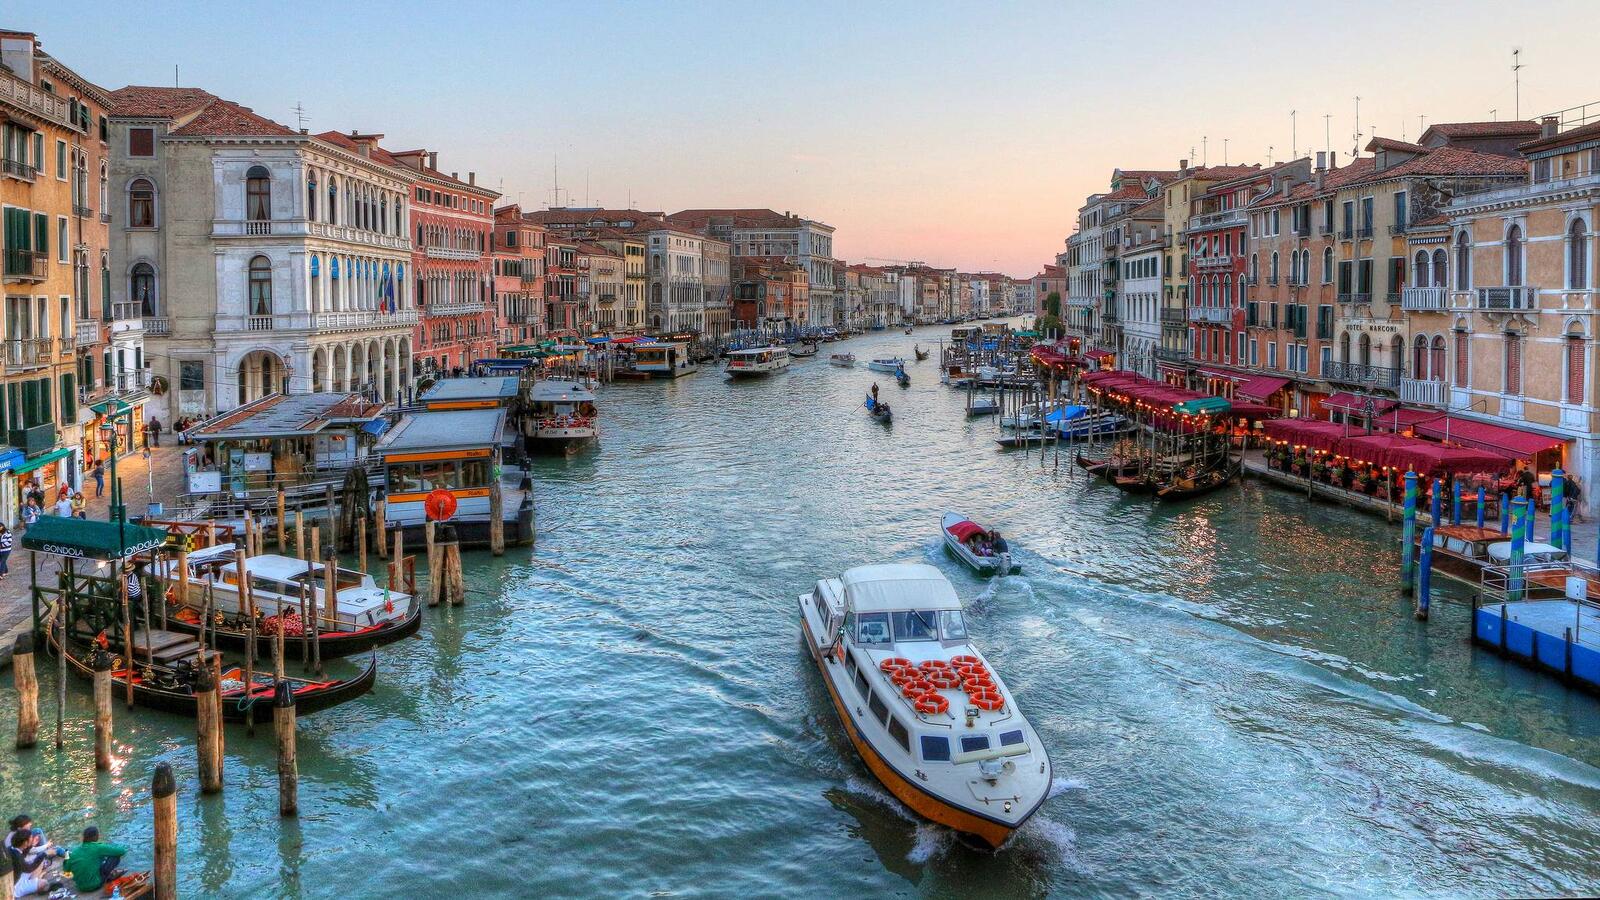 Обои Venice Grand Canal Italia на рабочий стол